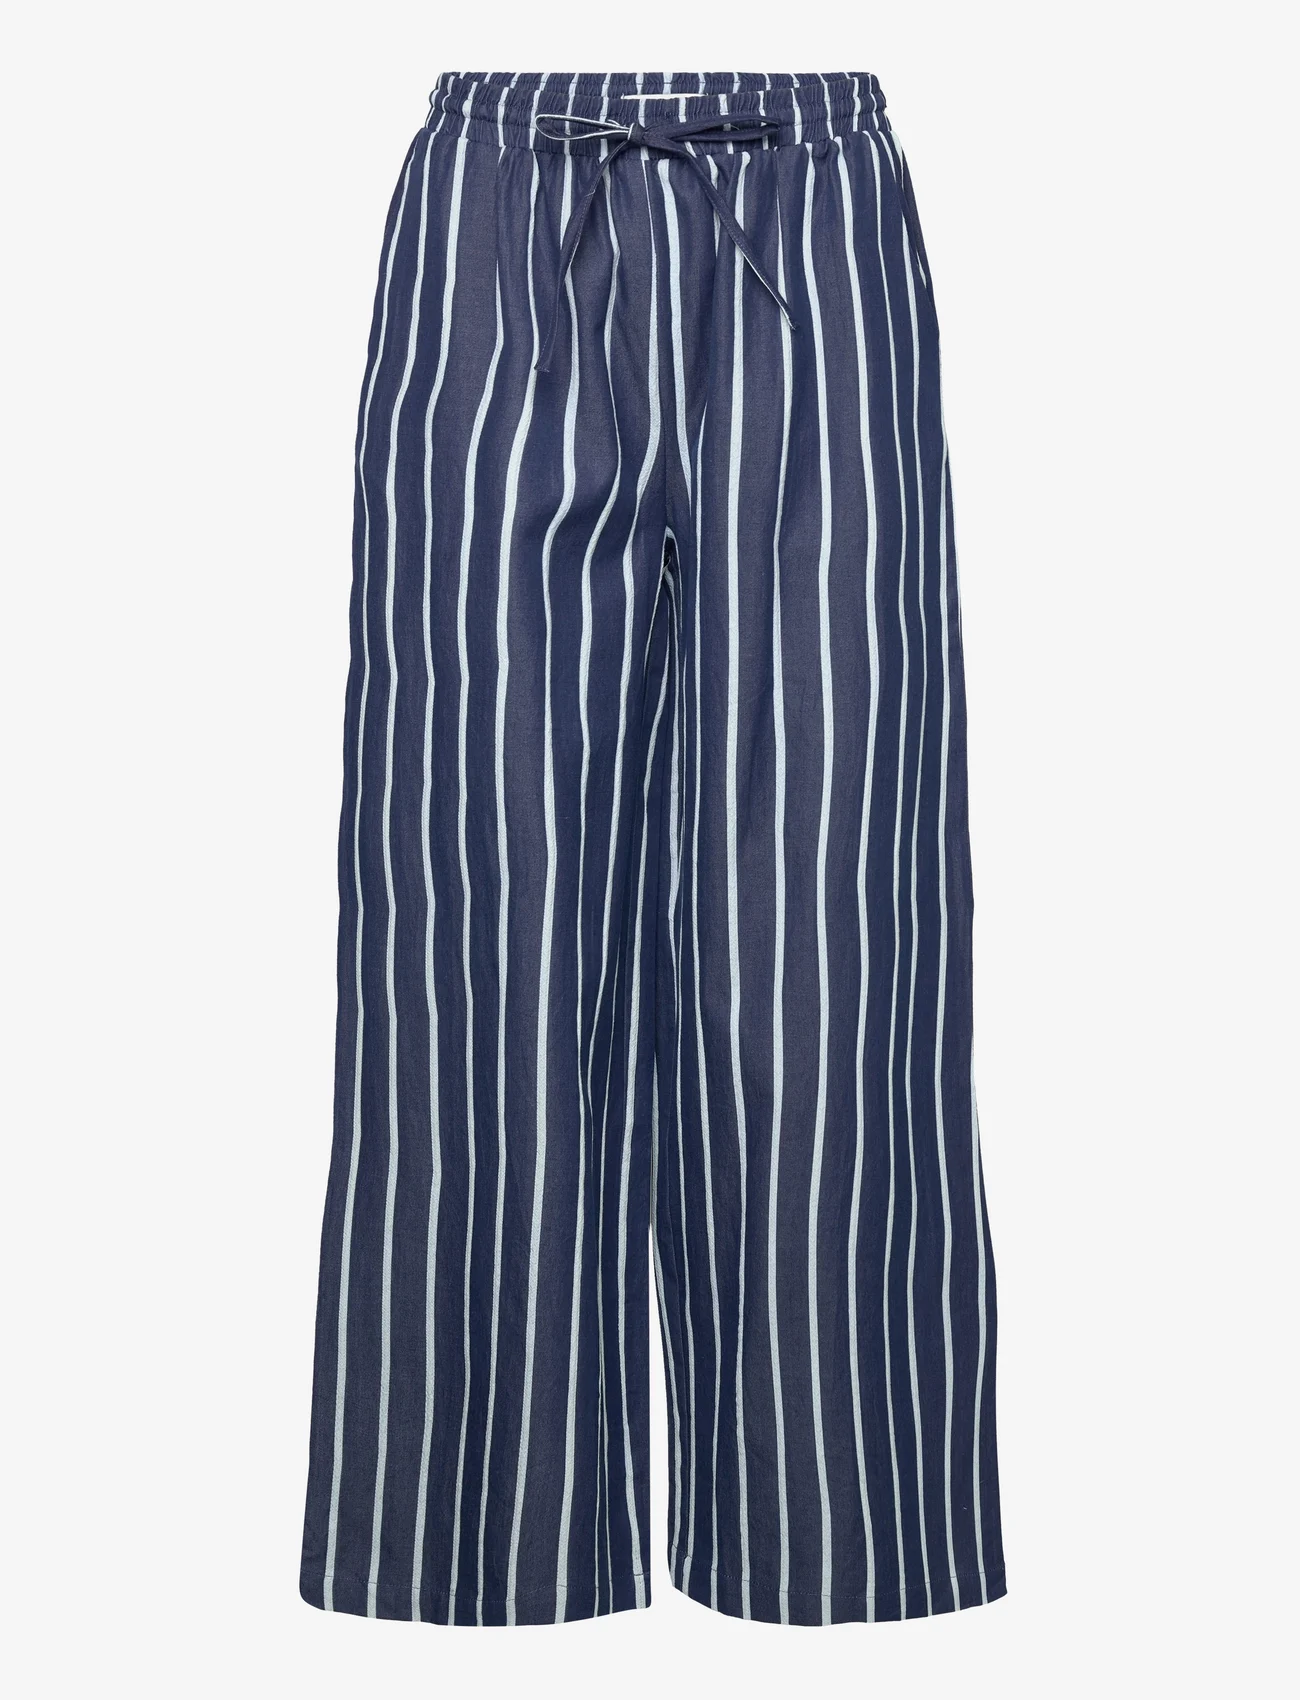 Lollys Laundry - Liam Pants - spodnie szerokie - 80 stripe - 0